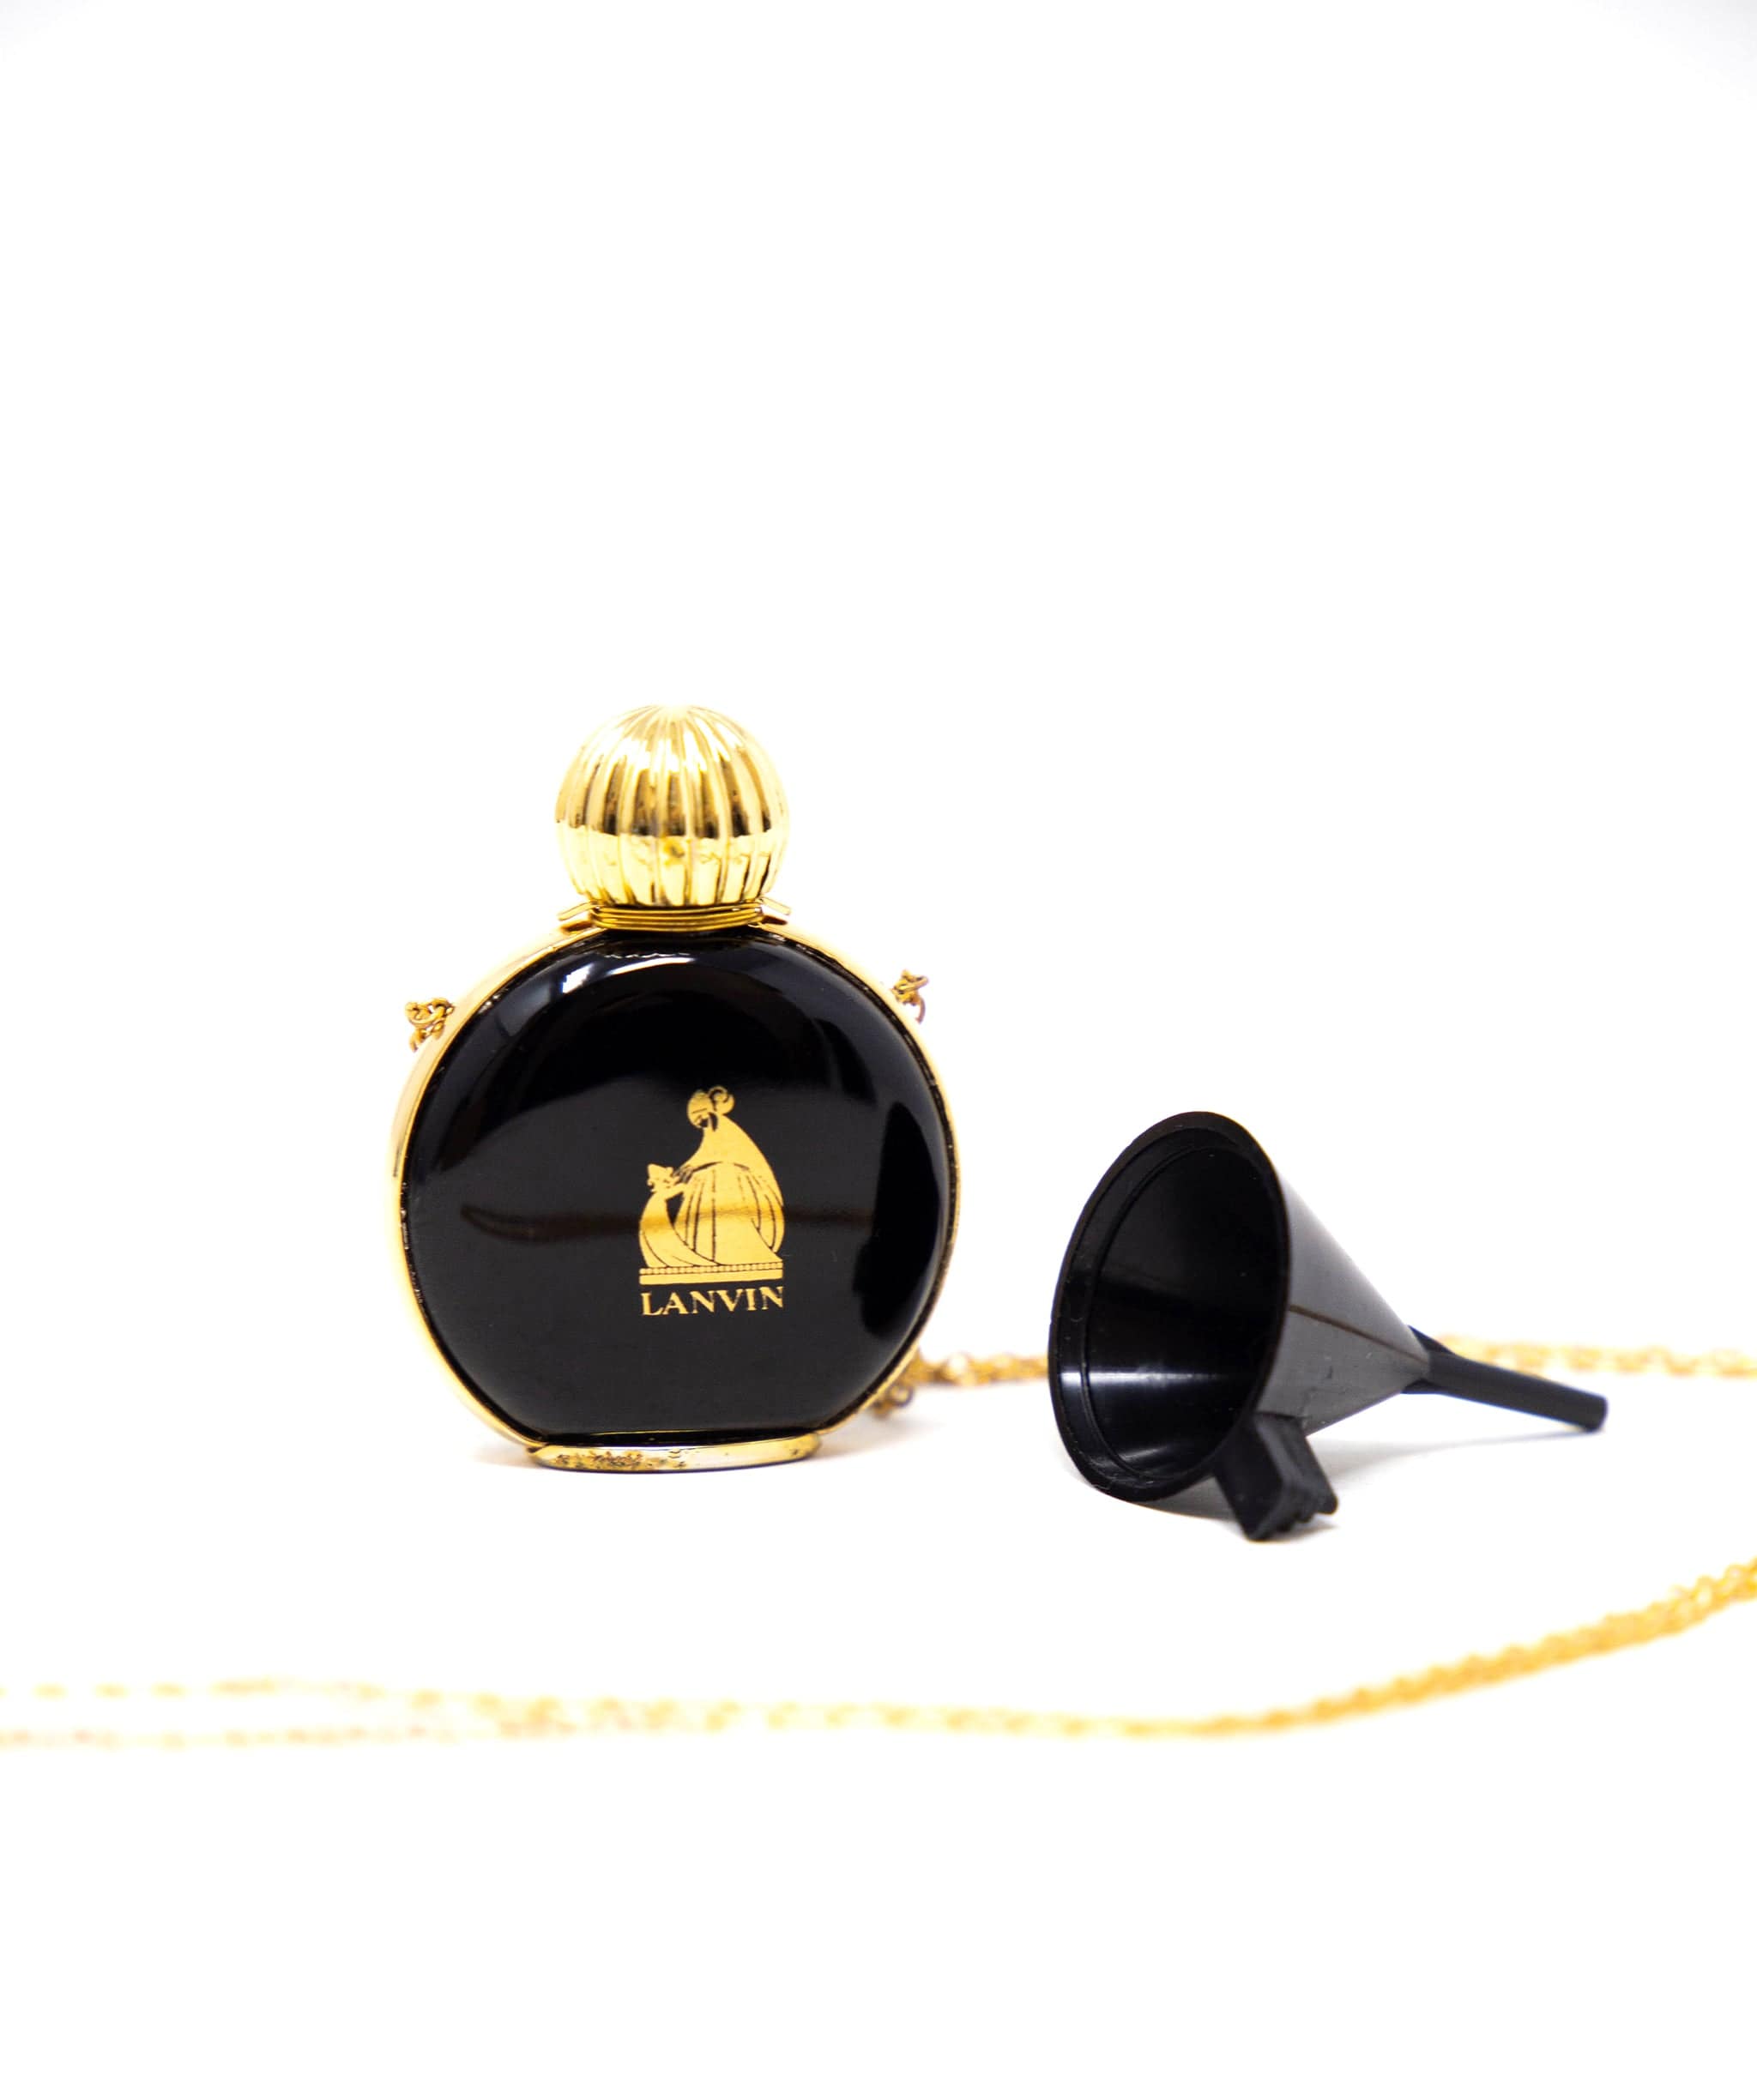 Lanvin Lanvin Vintage Arpege Perfume Bottle Necklace AWC1211